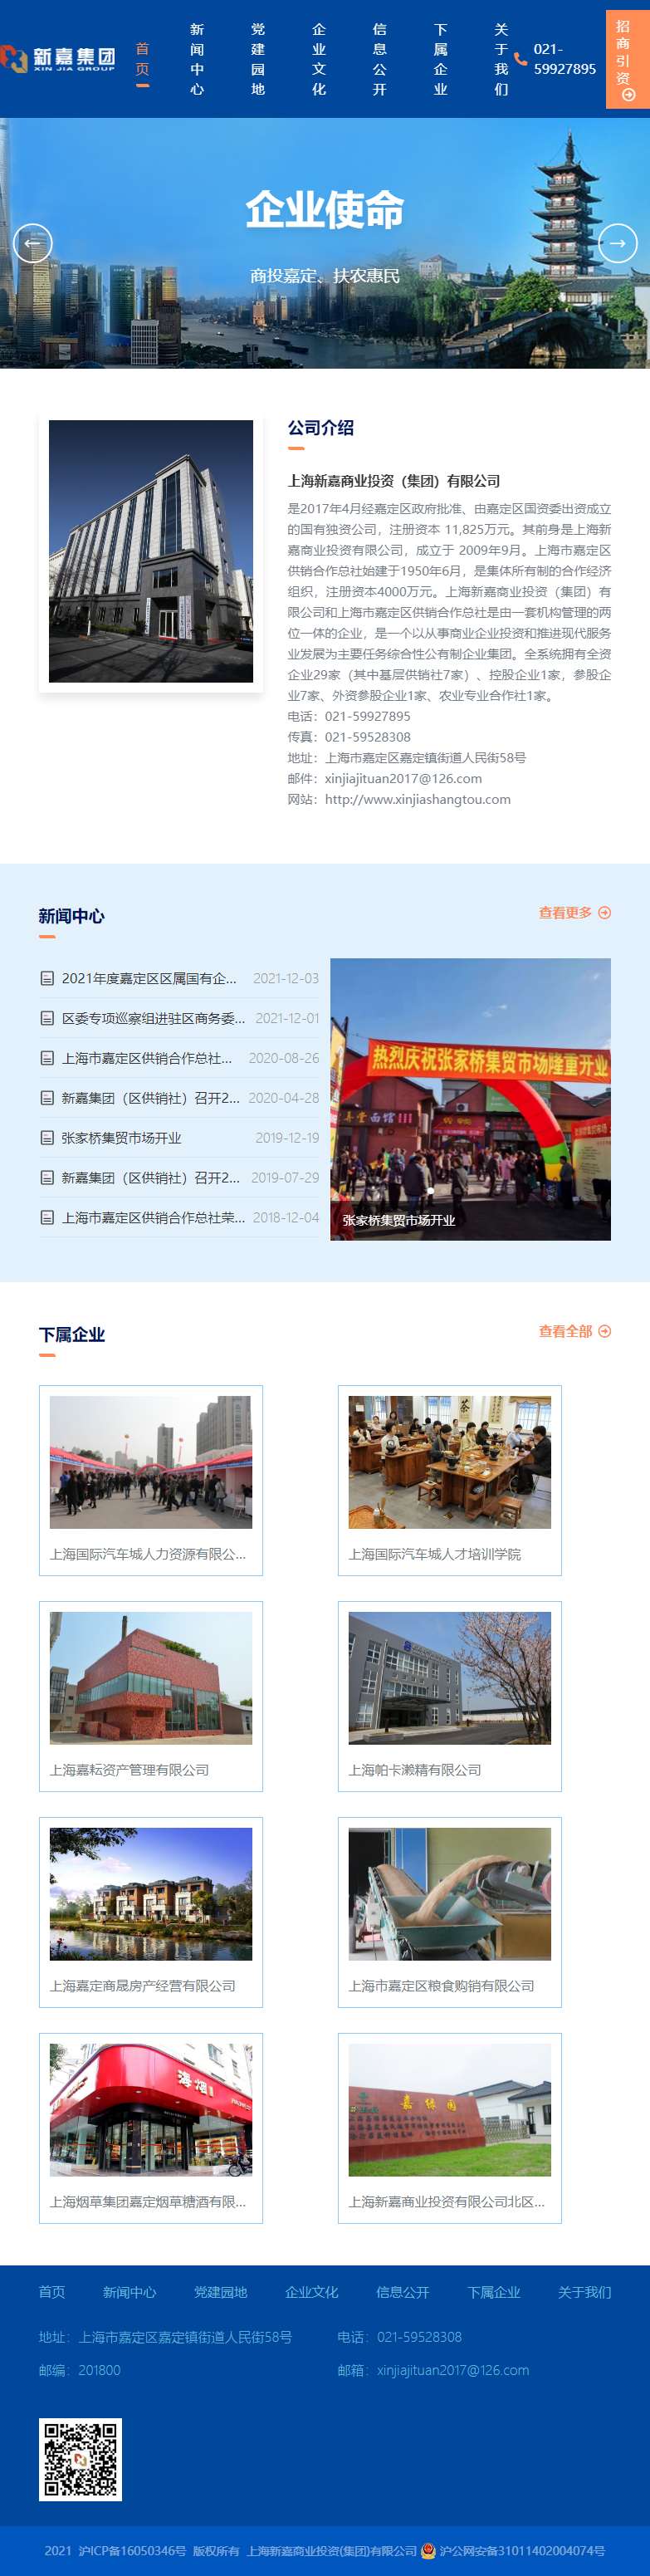 上海新嘉商业投资（集团）有限公司网站案例